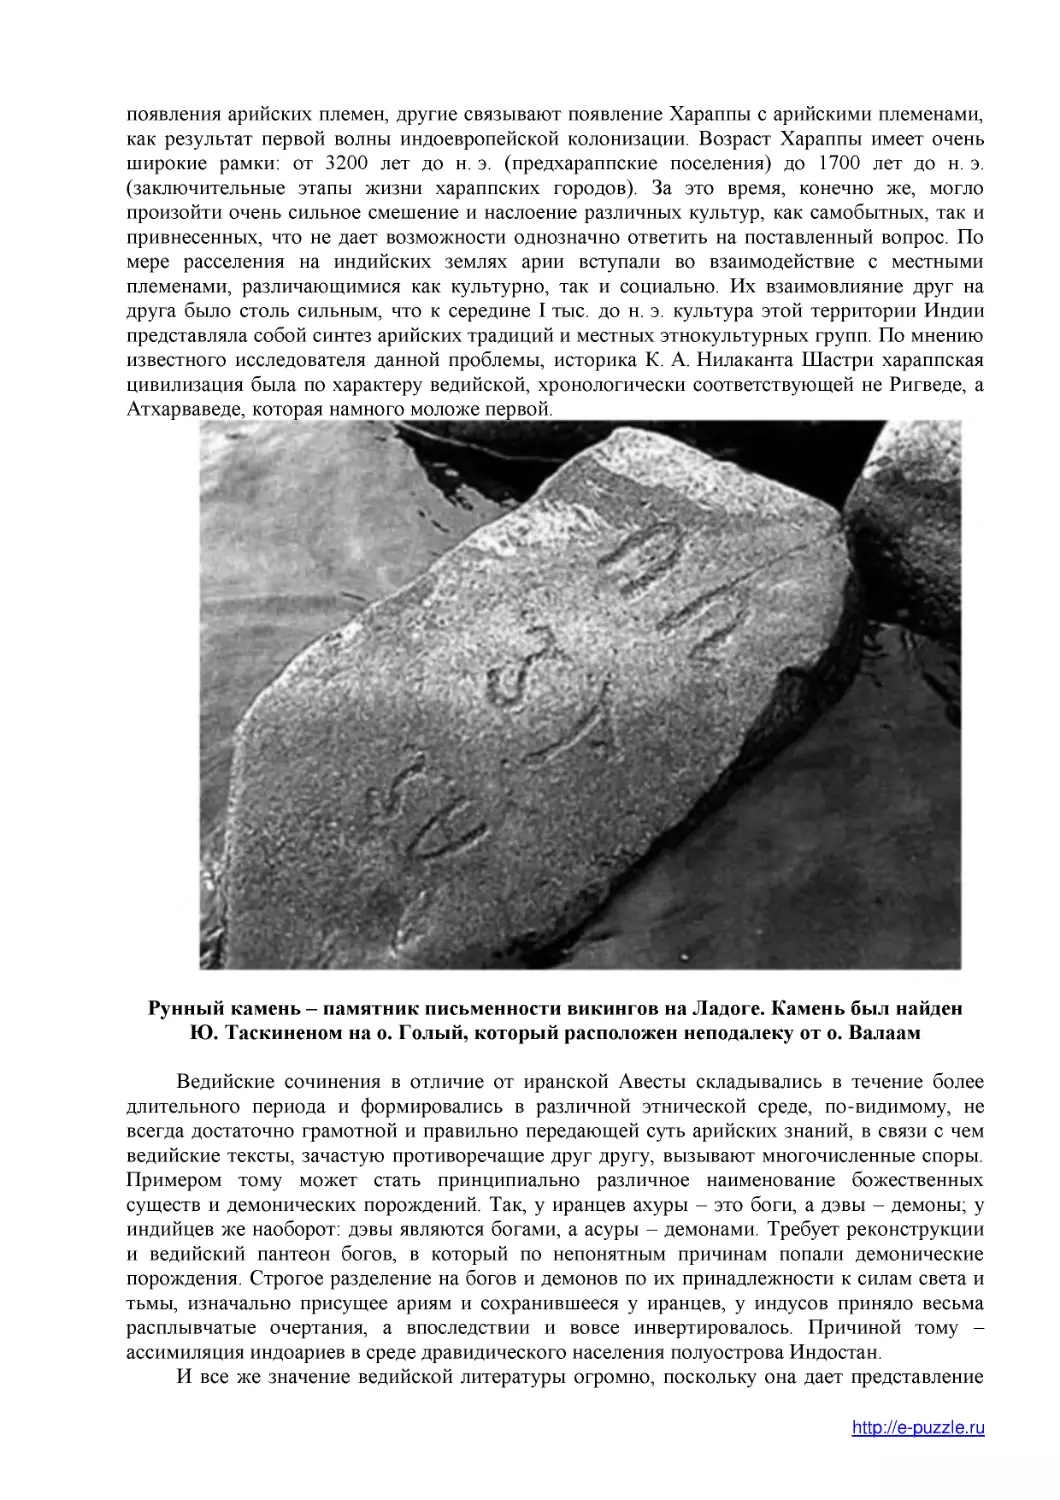 Рунный камень – памятник письменности викингов на Ладоге. Камень был найден Ю. Таскиненом на о. Голый, который расположен неподалеку от о. Валаам